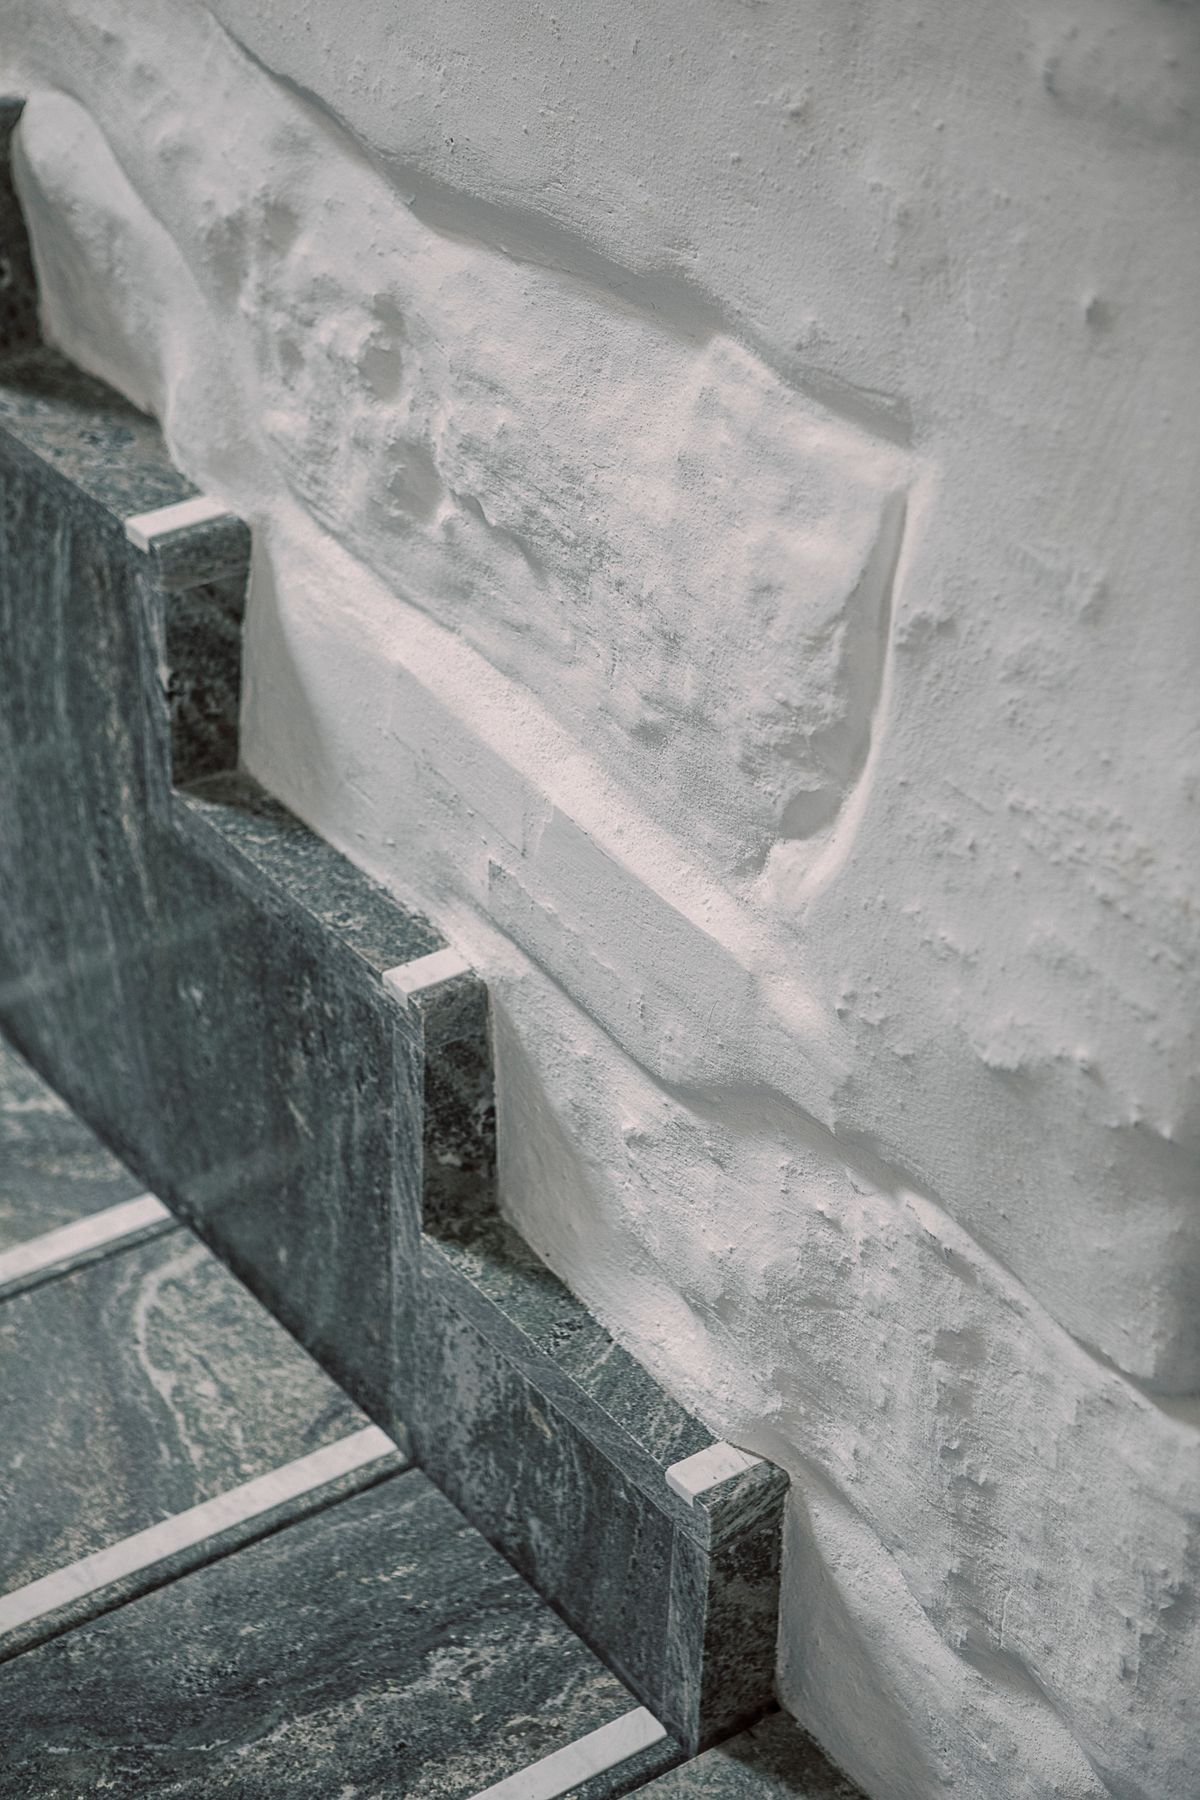 Detaljfoto av trapp i kirkeinngang, møtet mellom trapp og innside pusset teglvegg når trappen er helt nede. 